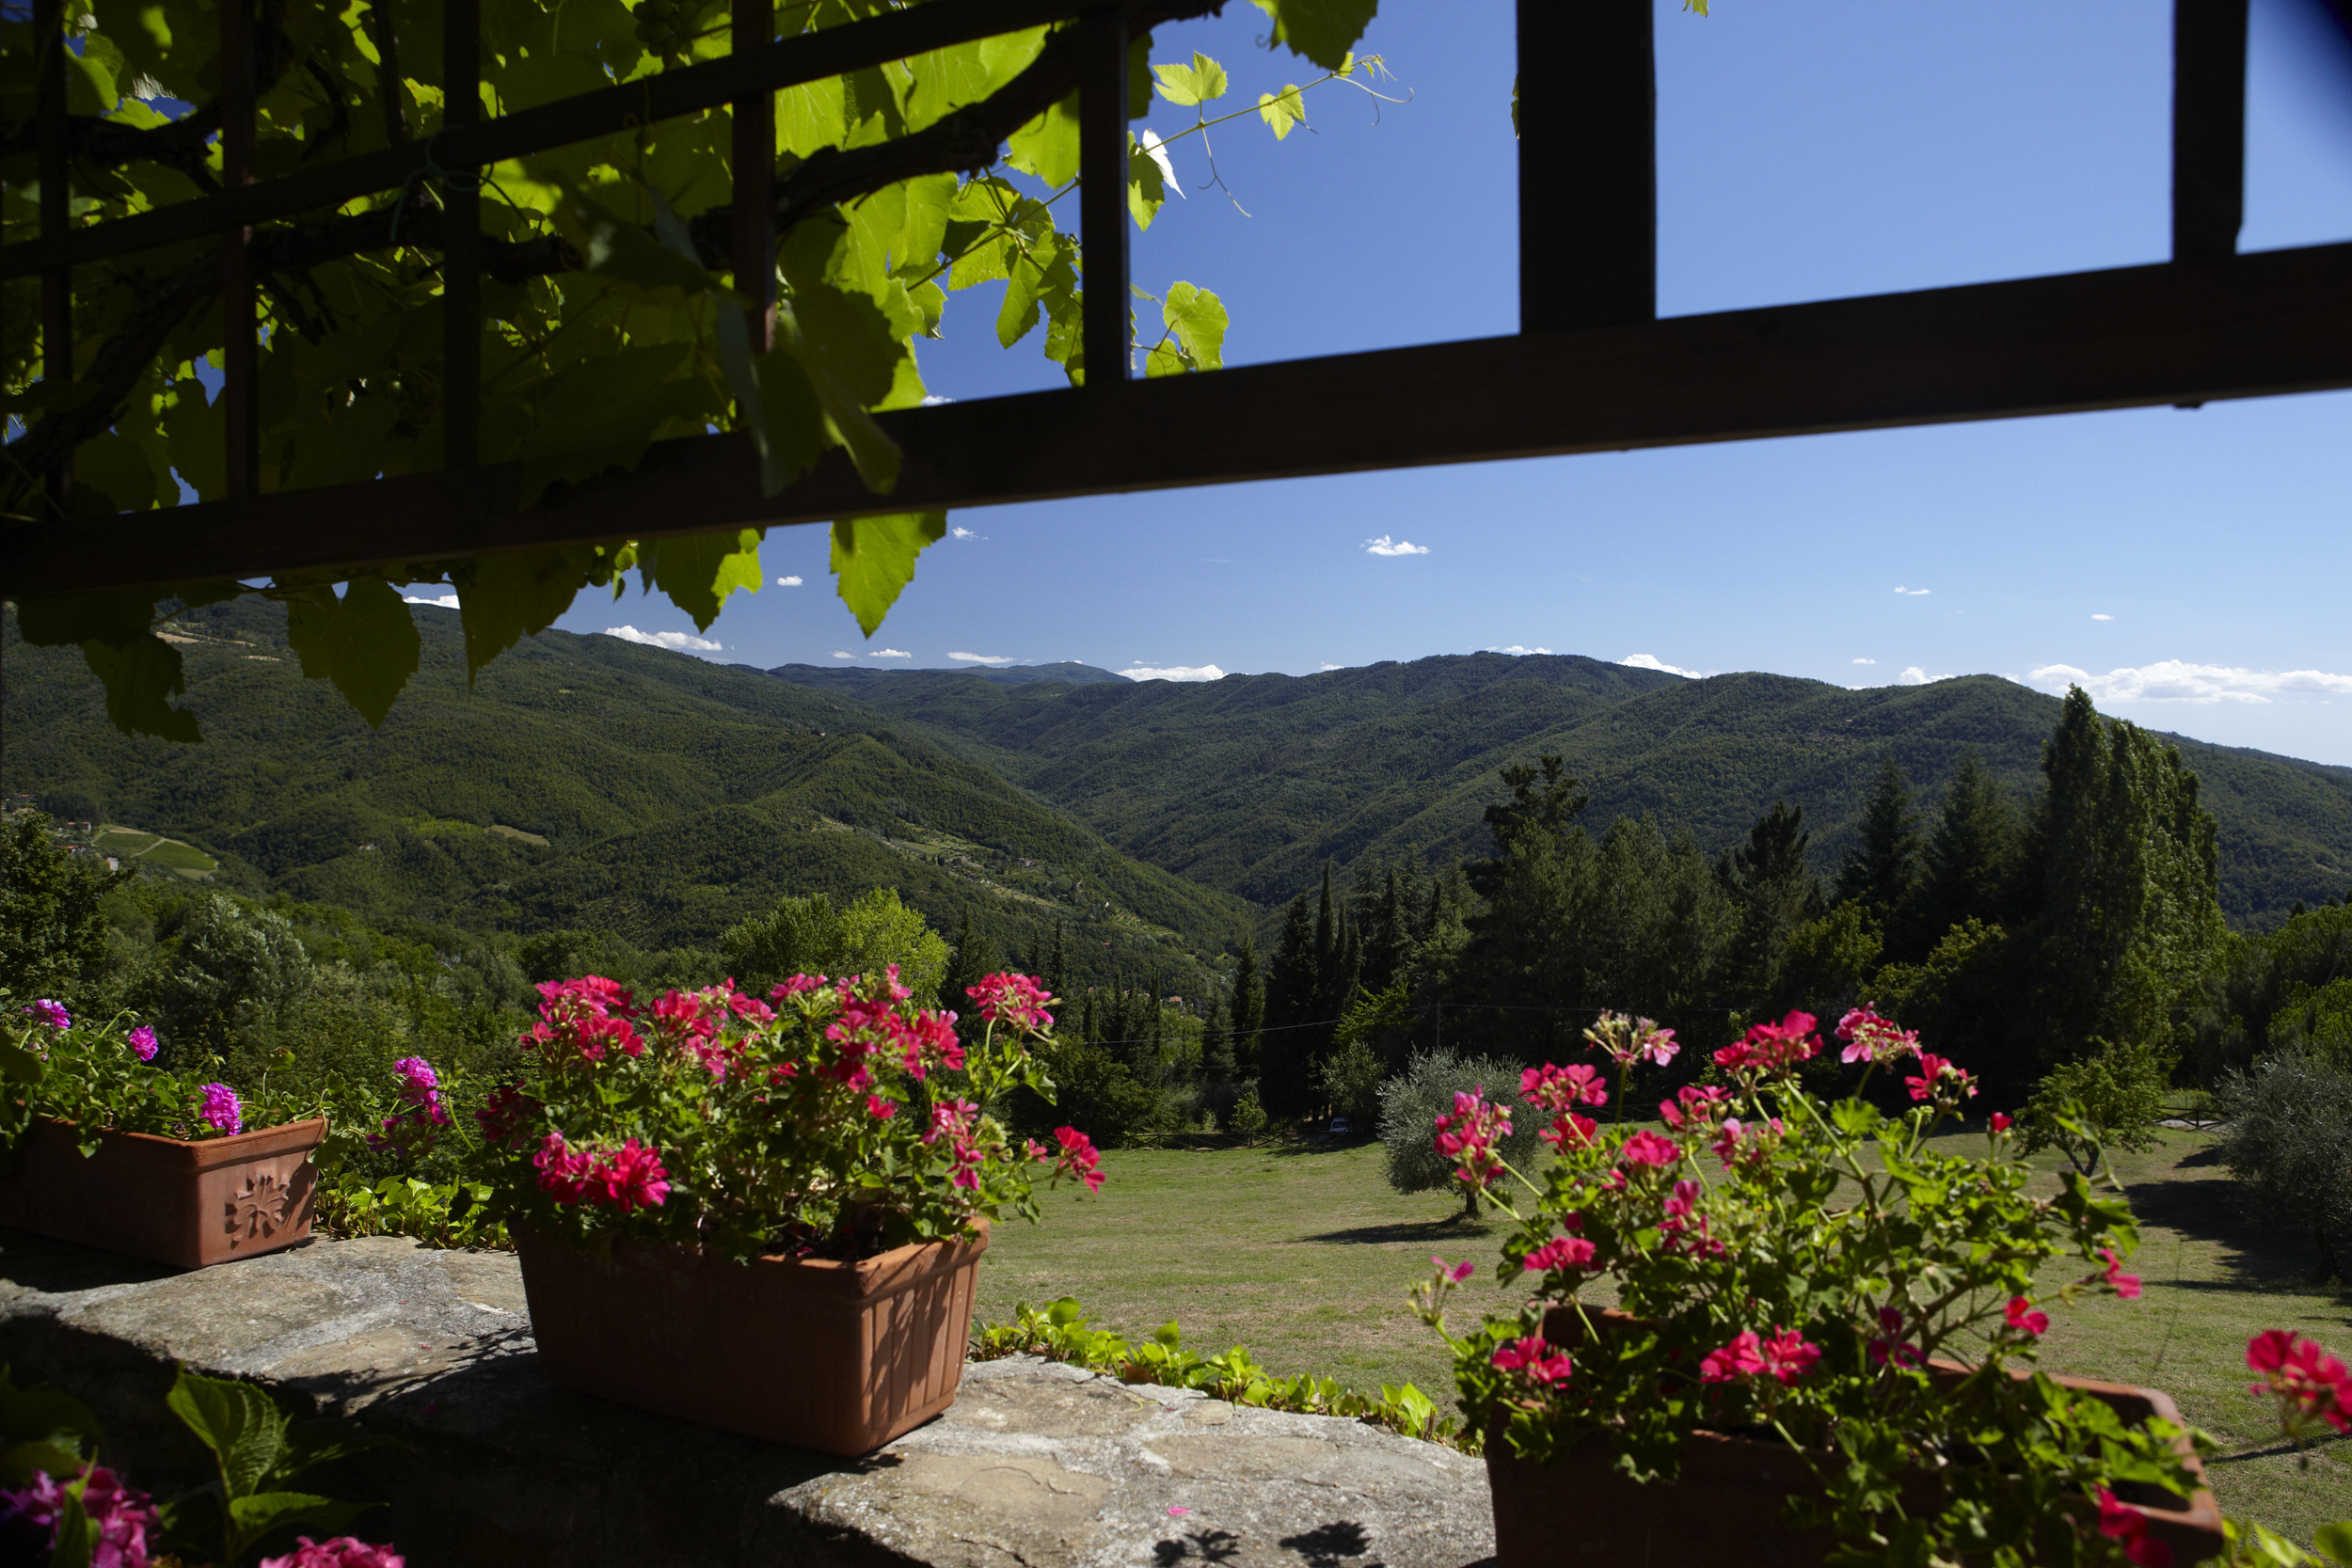 Tuscan views